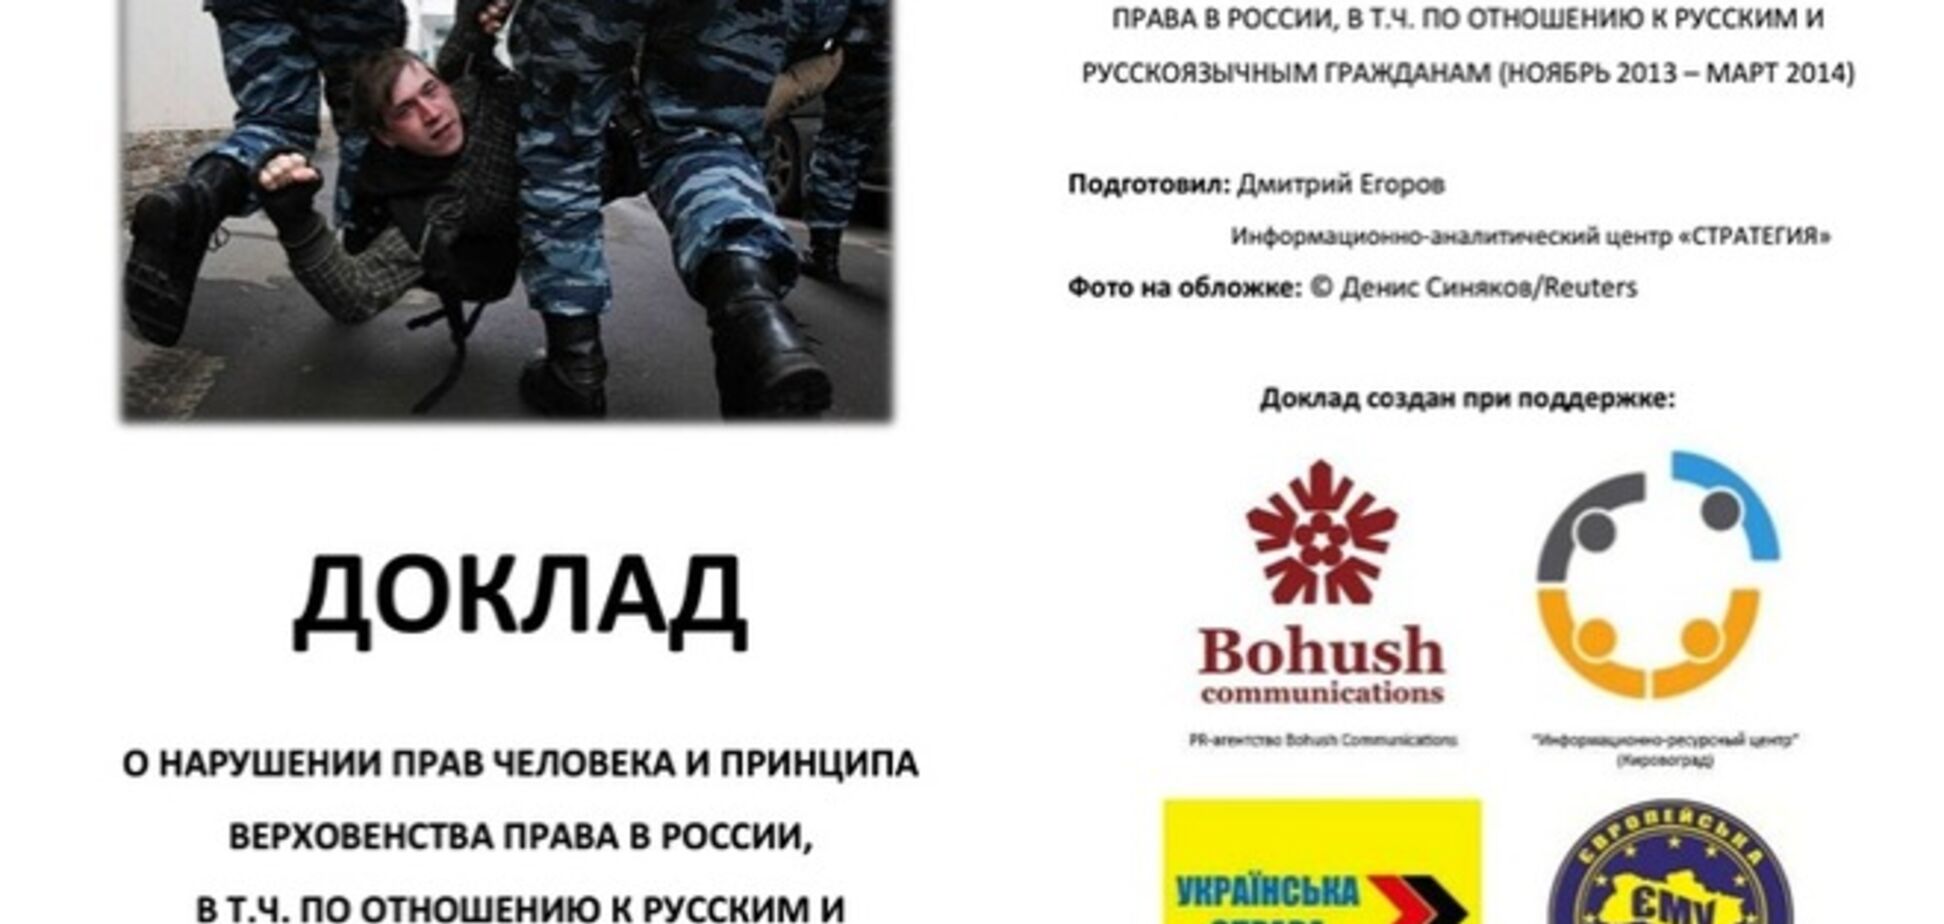 Нарушение прав человека в России. Пресс-конференция в 'Обозревателе'